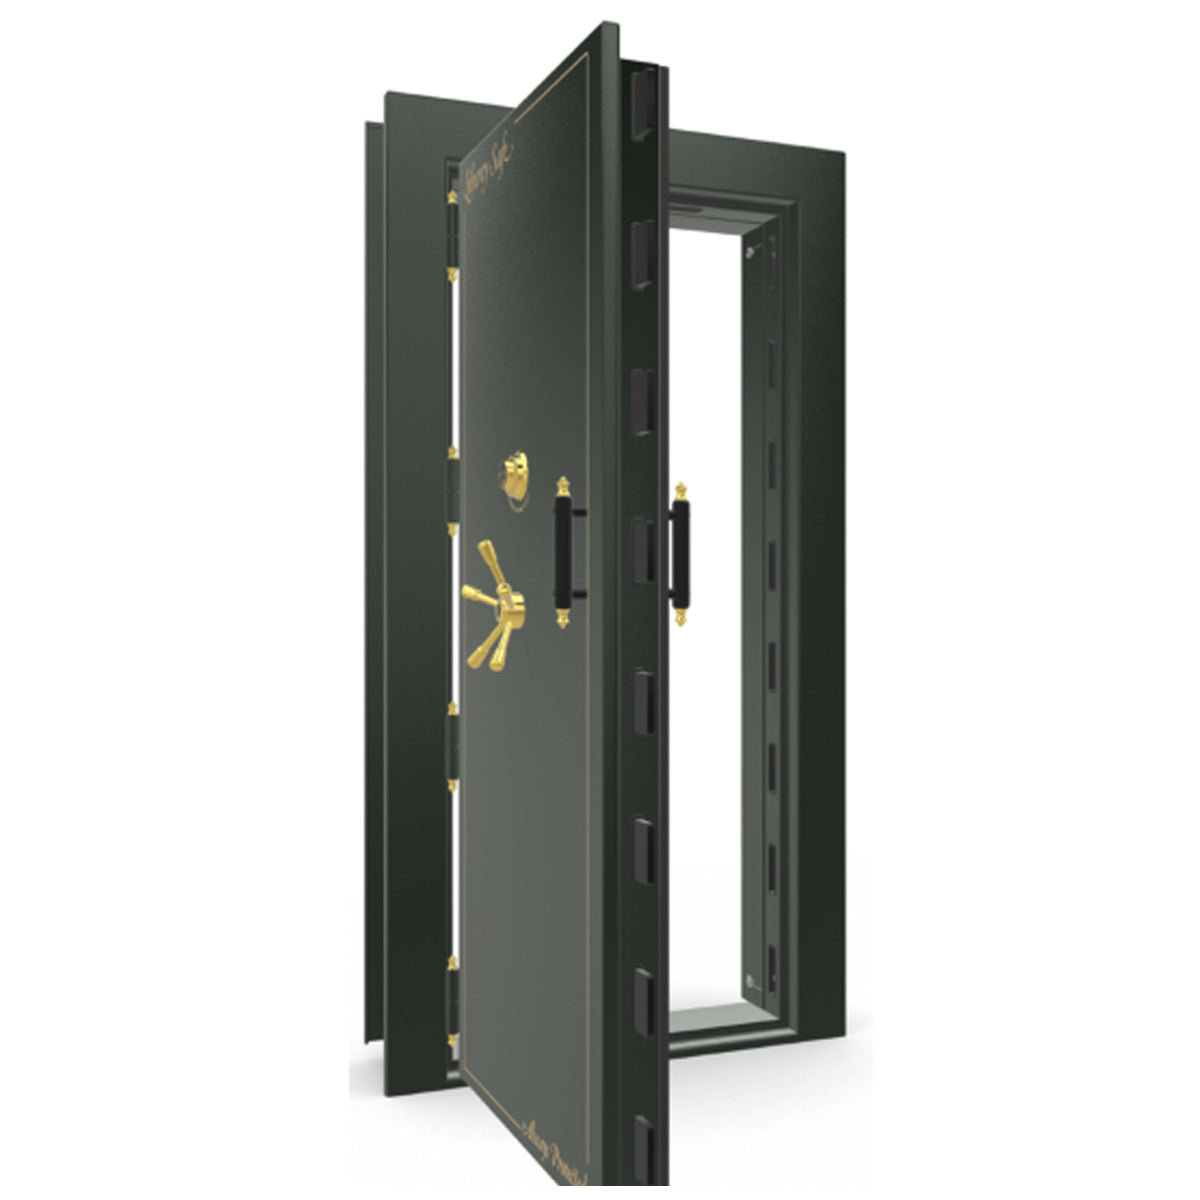 The Beast Vault Door in Green Gloss with Brass Electronic Lock, Left Outswing, door open.